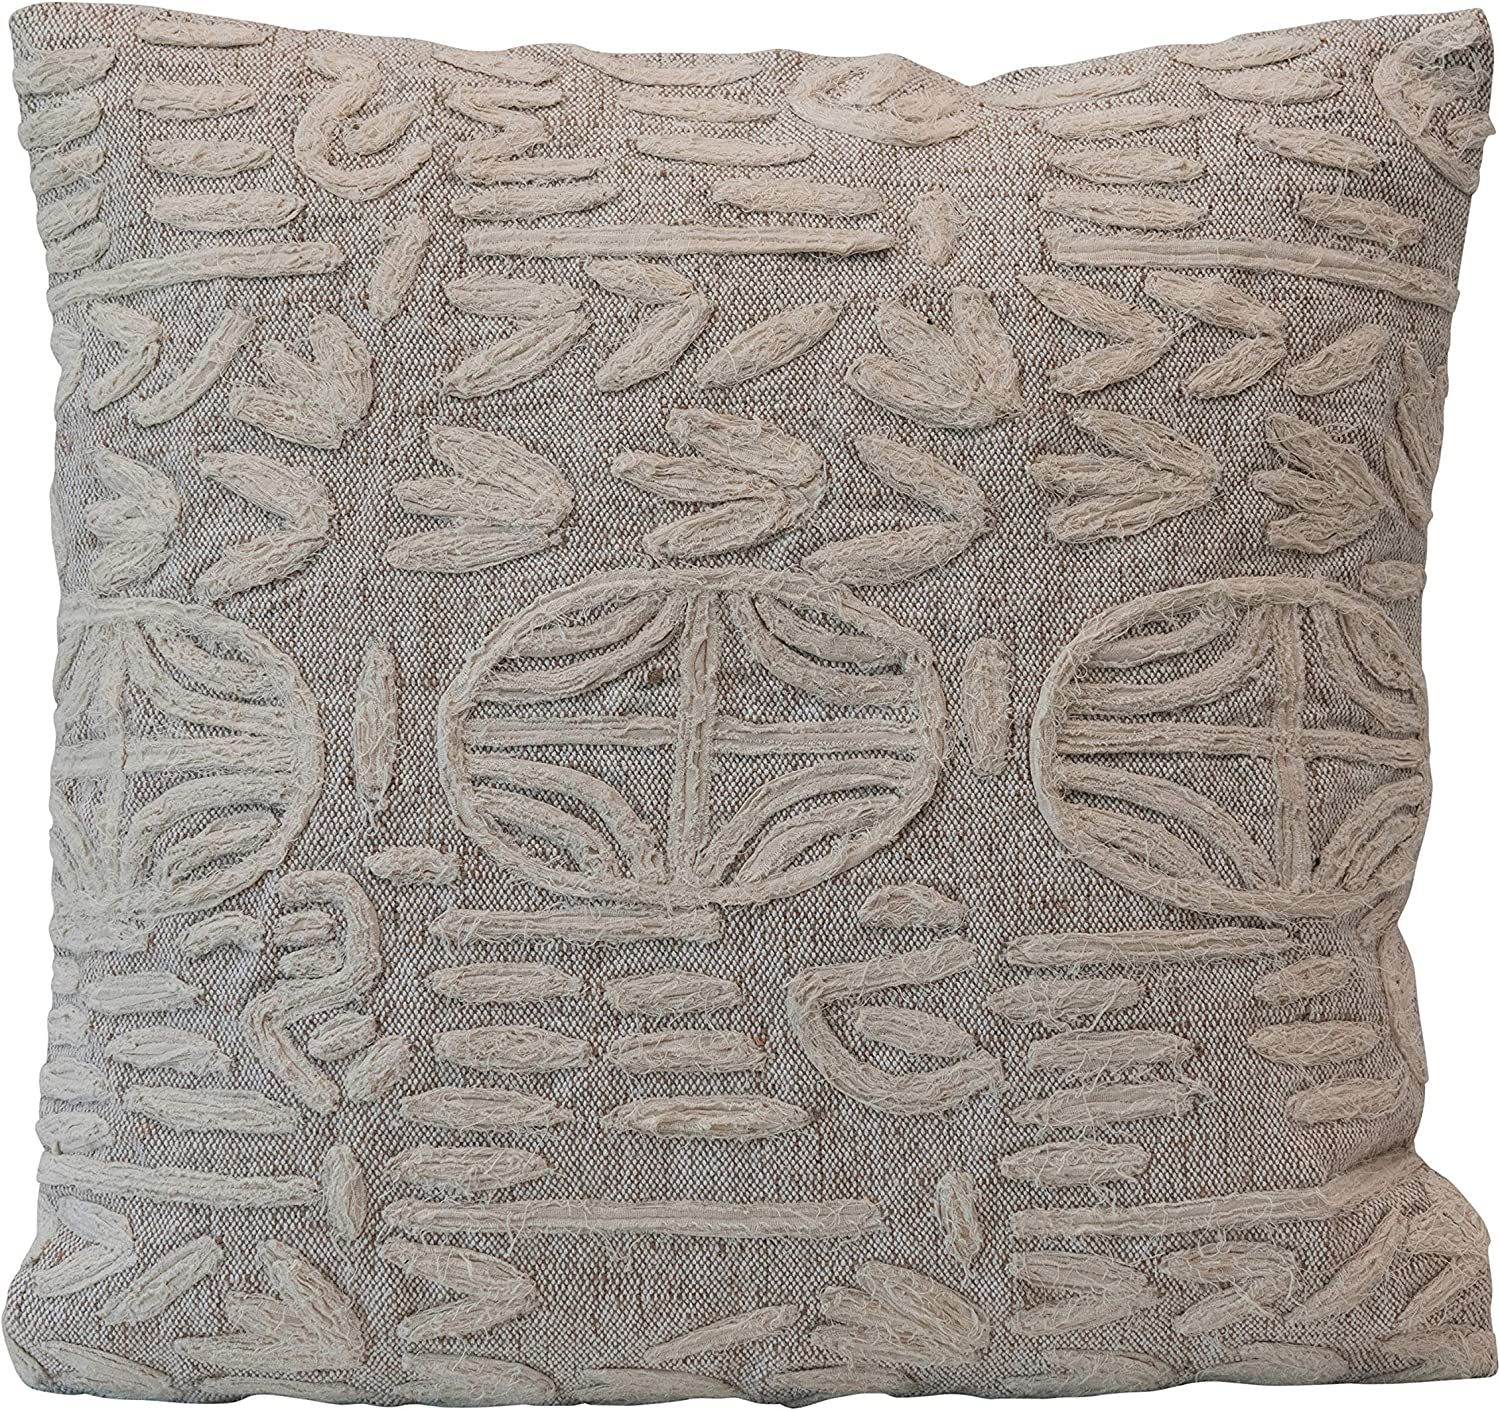 Creative Co-Op Cotton & Jute Appliqued, Beige & Cream Color Pillow | Amazon (US)